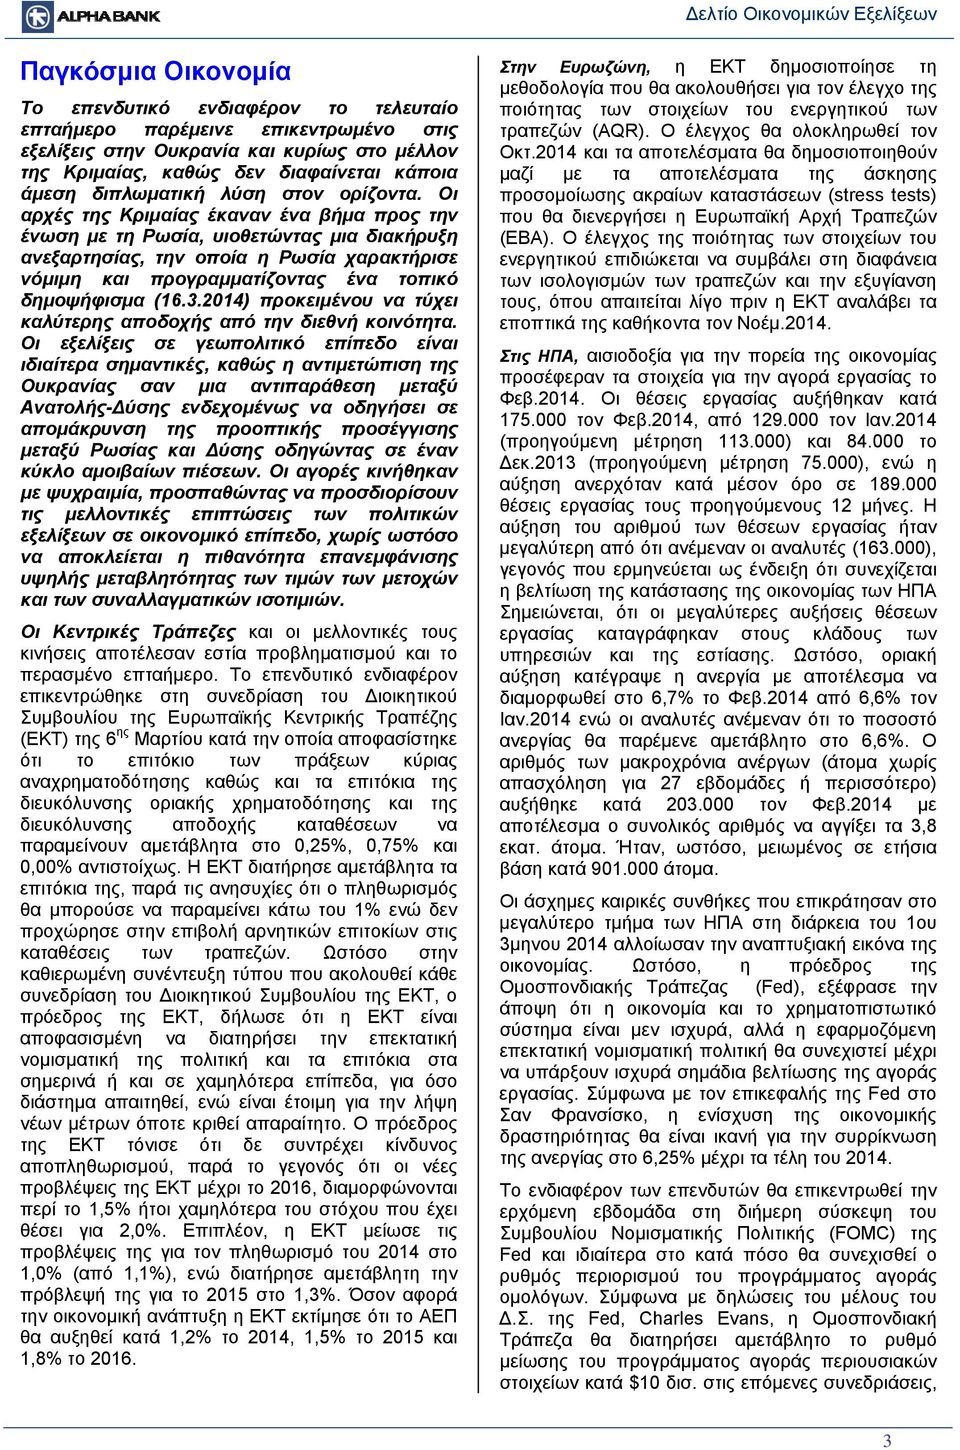 Οι αρχές της Κριμαίας έκαναν ένα βήμα προς την ένωση με τη Ρωσία, υιοθετώντας μια διακήρυξη ανεξαρτησίας, την οποία η Ρωσία χαρακτήρισε νόμιμη και προγραμματίζοντας ένα τοπικό δημοψήφισμα (16.3.